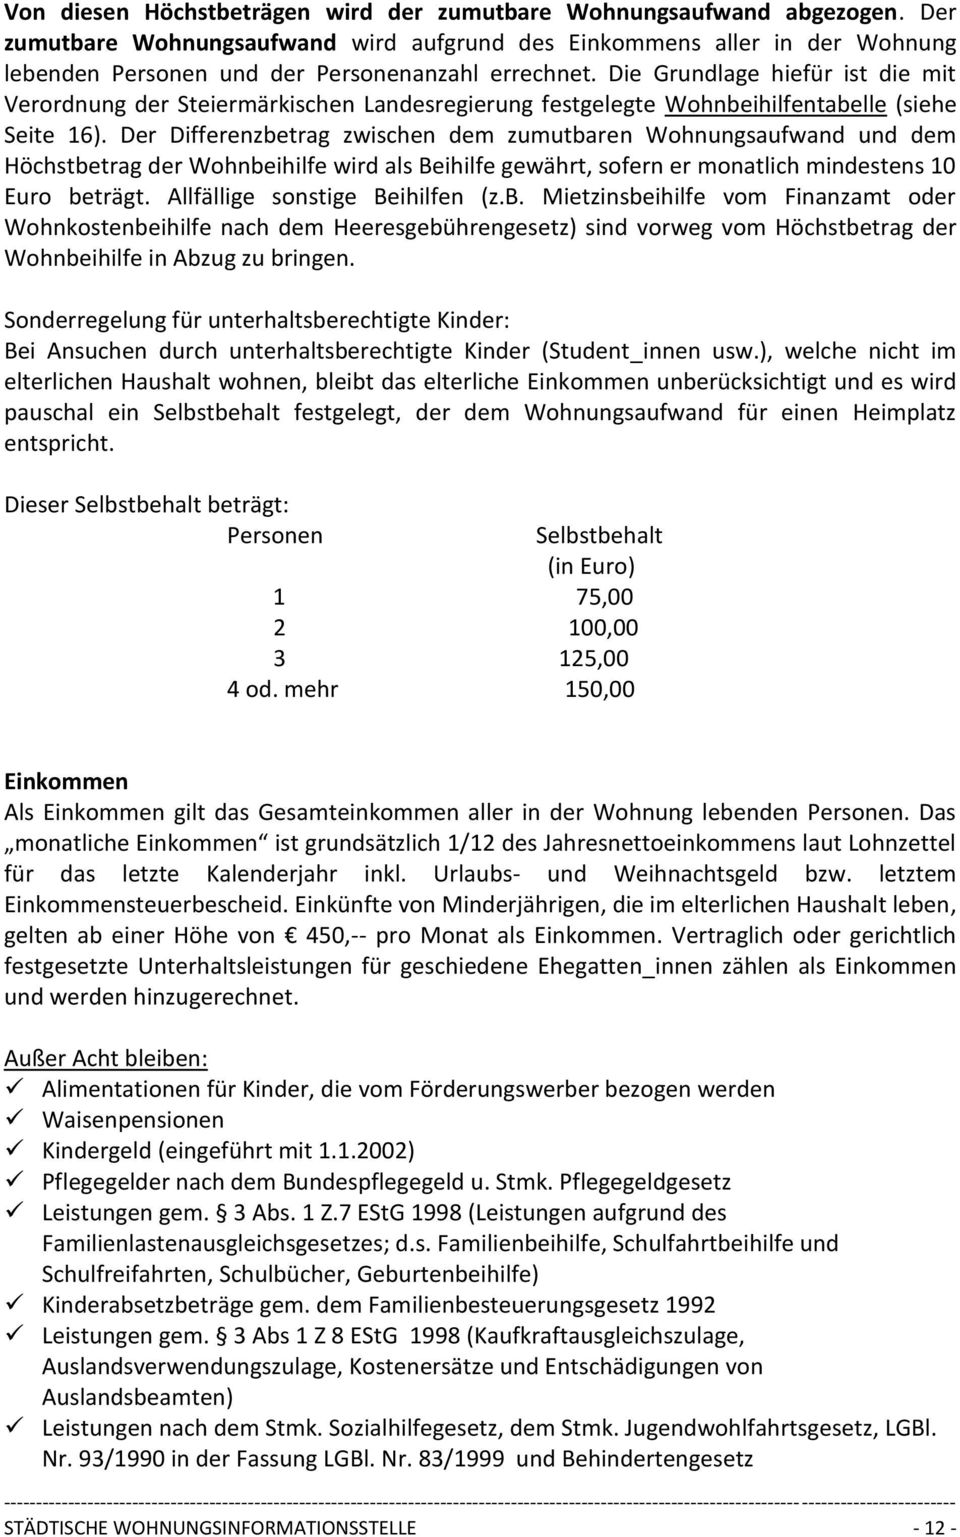 Die Grundlage hiefür ist die mit Verordnung der Steiermärkischen Landesregierung festgelegte Wohnbeihilfentabelle (siehe Seite 16).